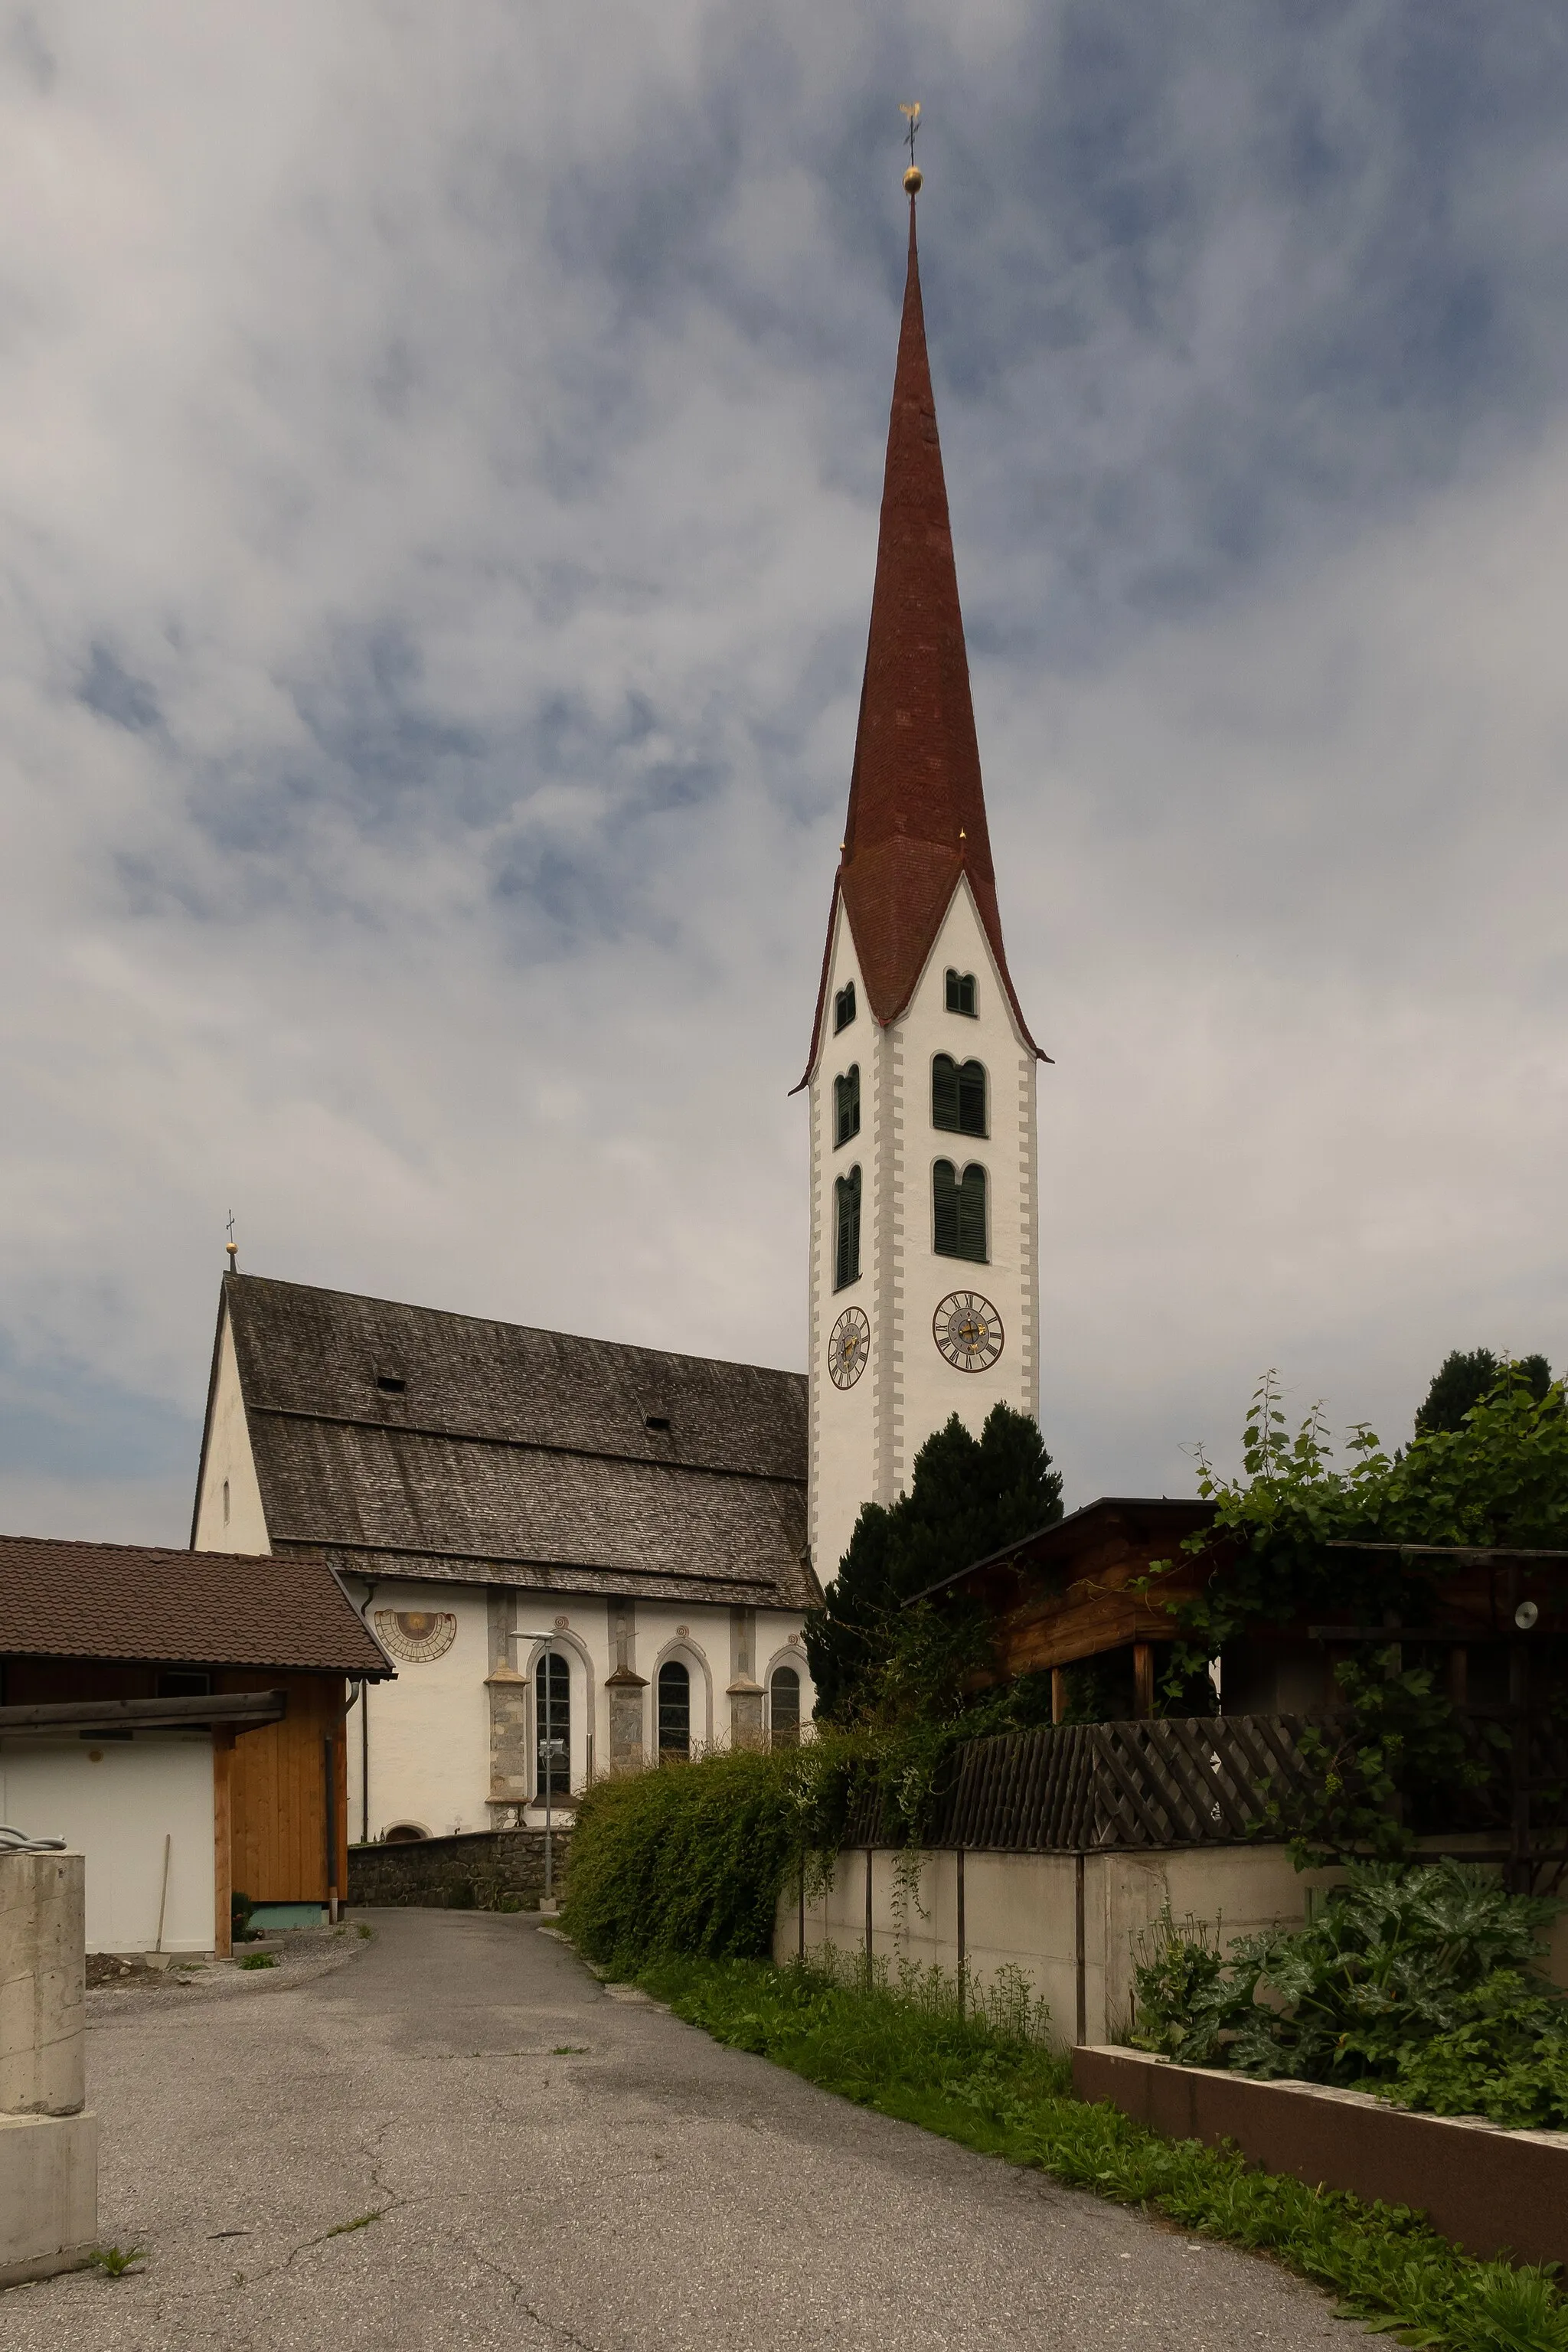 Slika Tirol